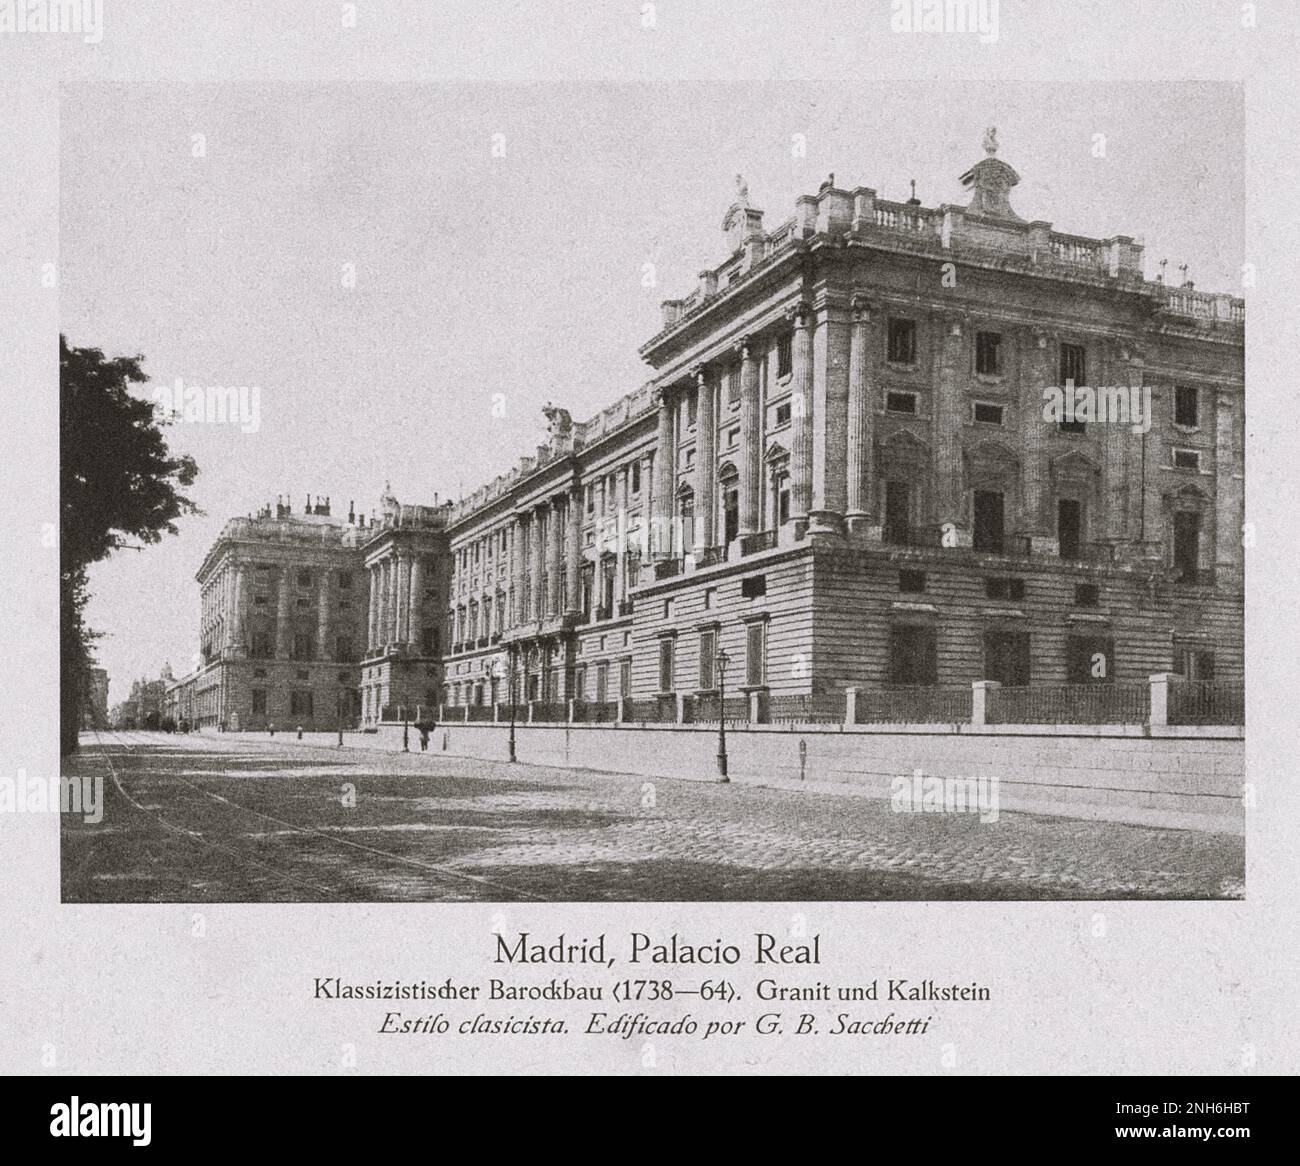 Das Alte Spanien. Vintage-Foto des Königspalastes von Madrid (Palacio Real de Madrid). Klassisches Barockgebäude (1738-1764). Granit und Kalkstein. Die offizielle Residenz der spanischen Königsfamilie in der Stadt Madrid, die heute nur für Staatszeremonien genutzt wird. Stockfoto